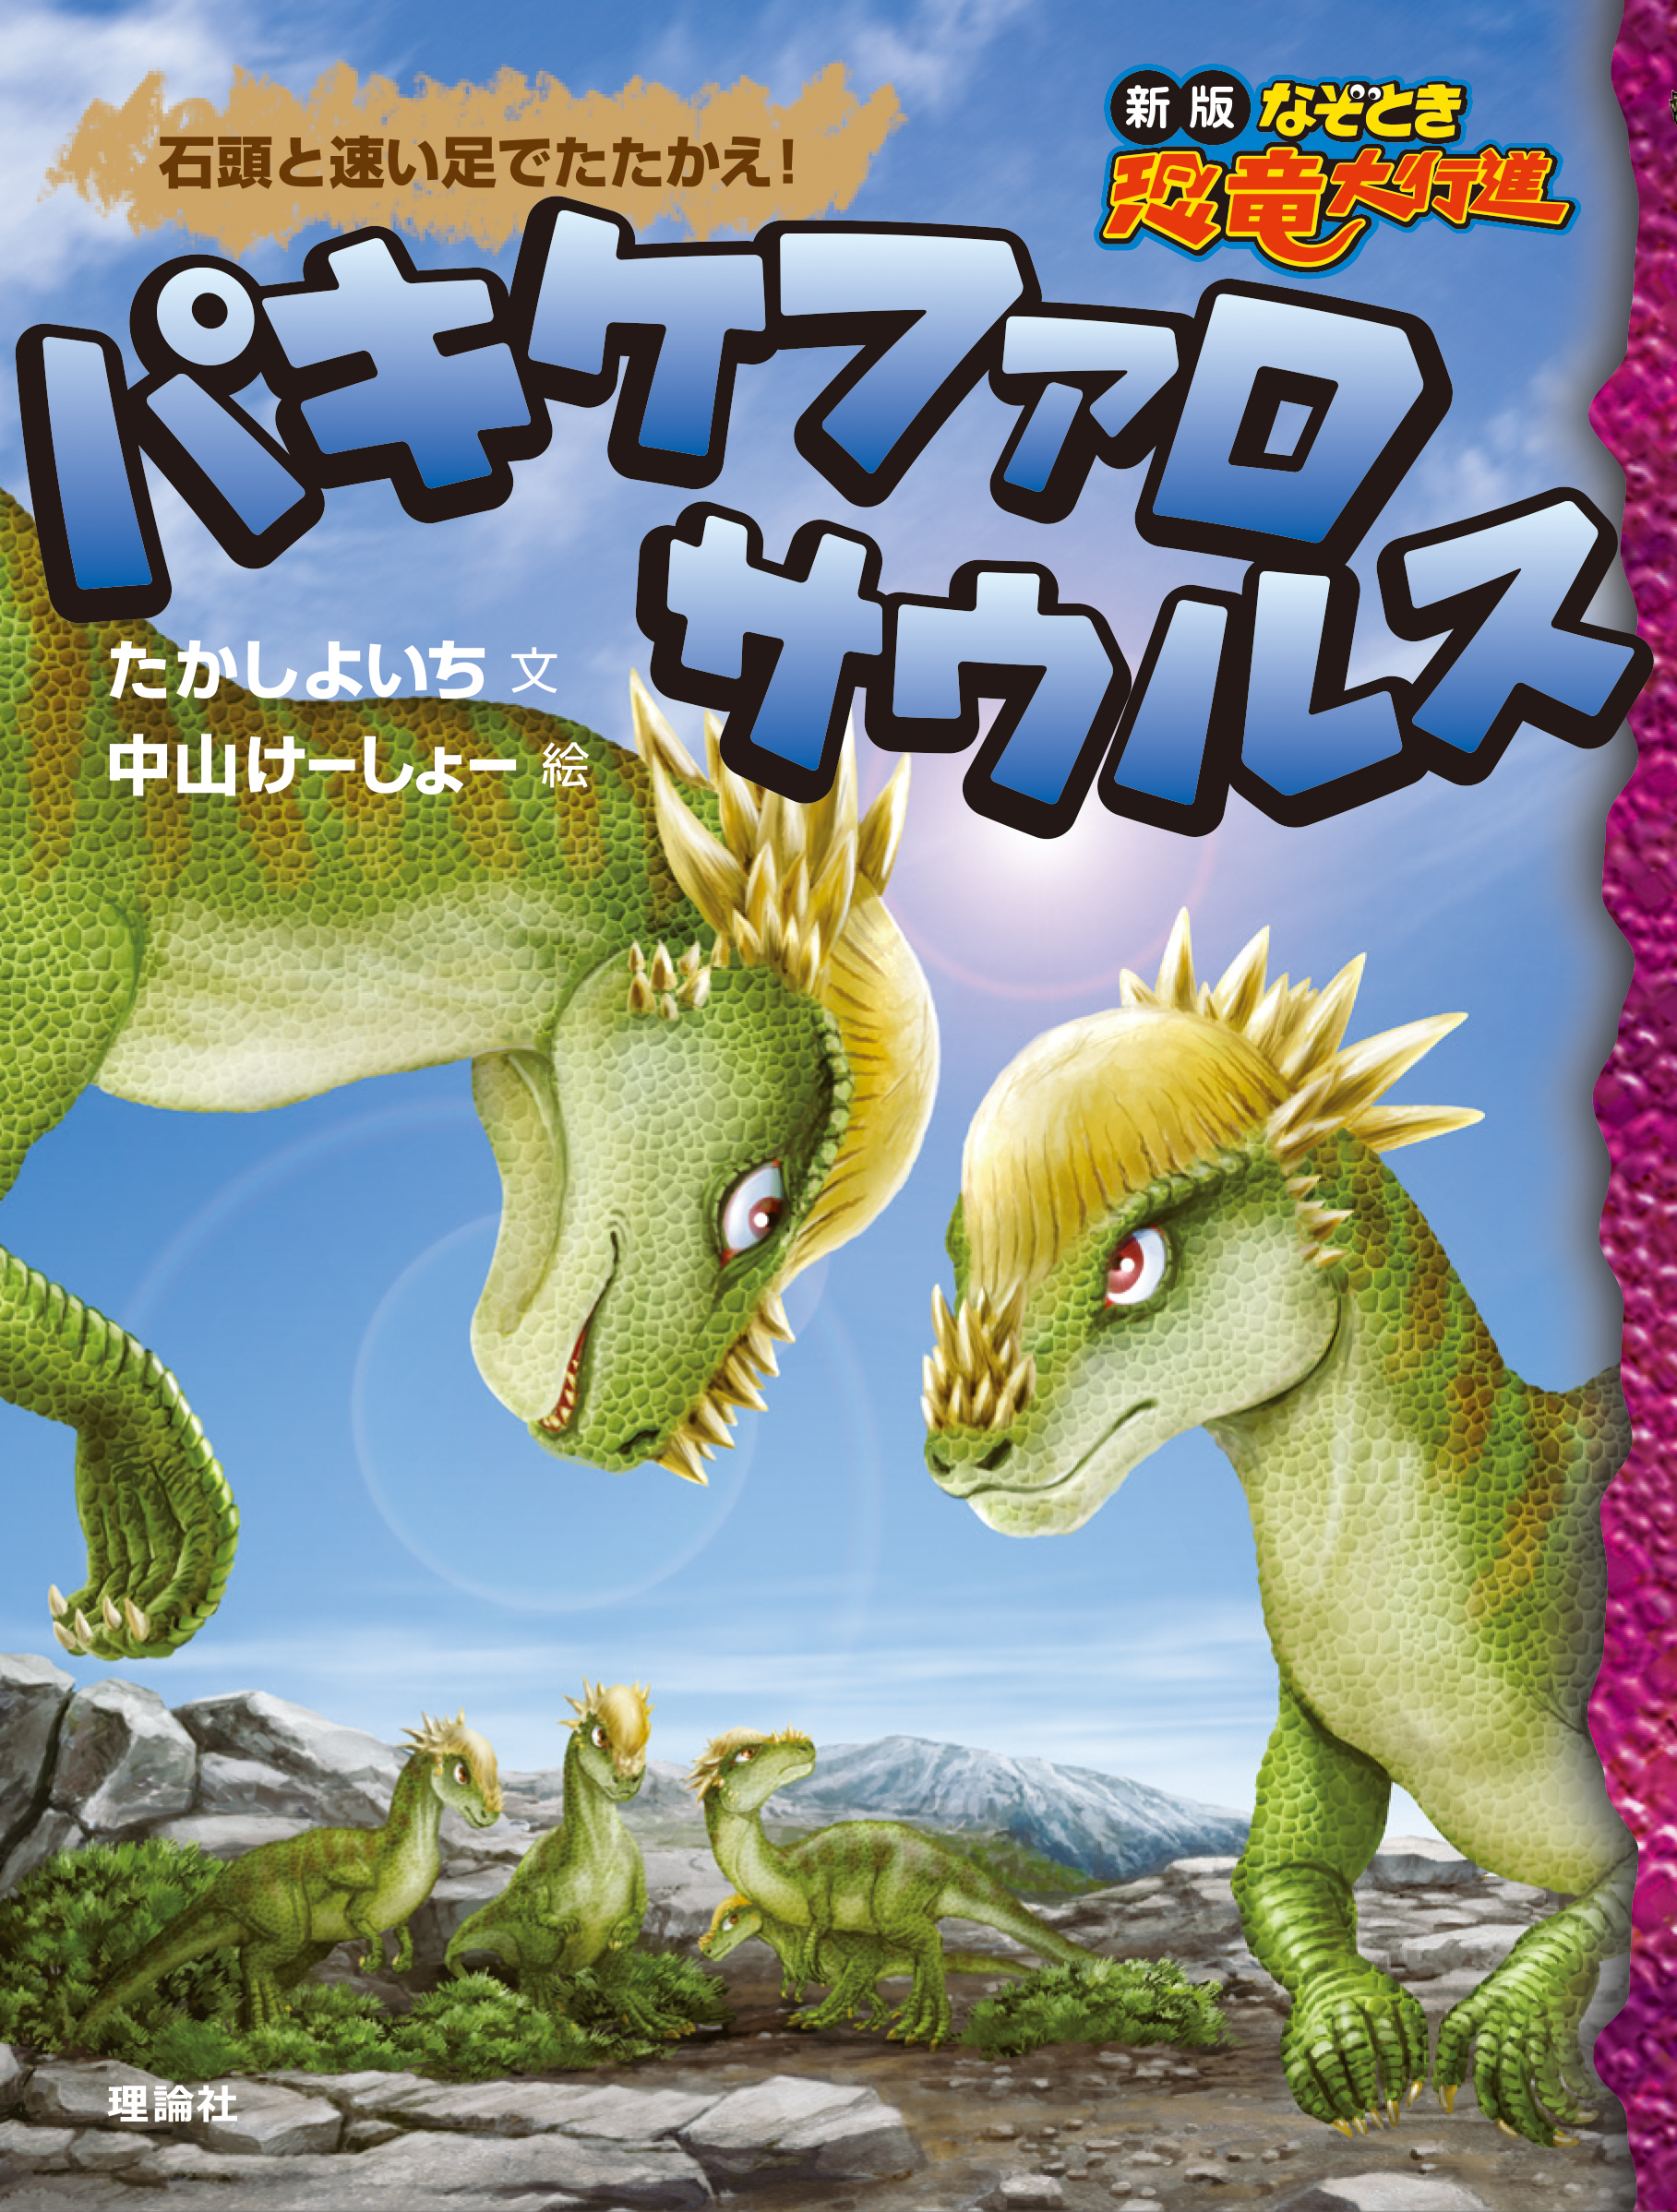 パキケファロサウルスの商品画像